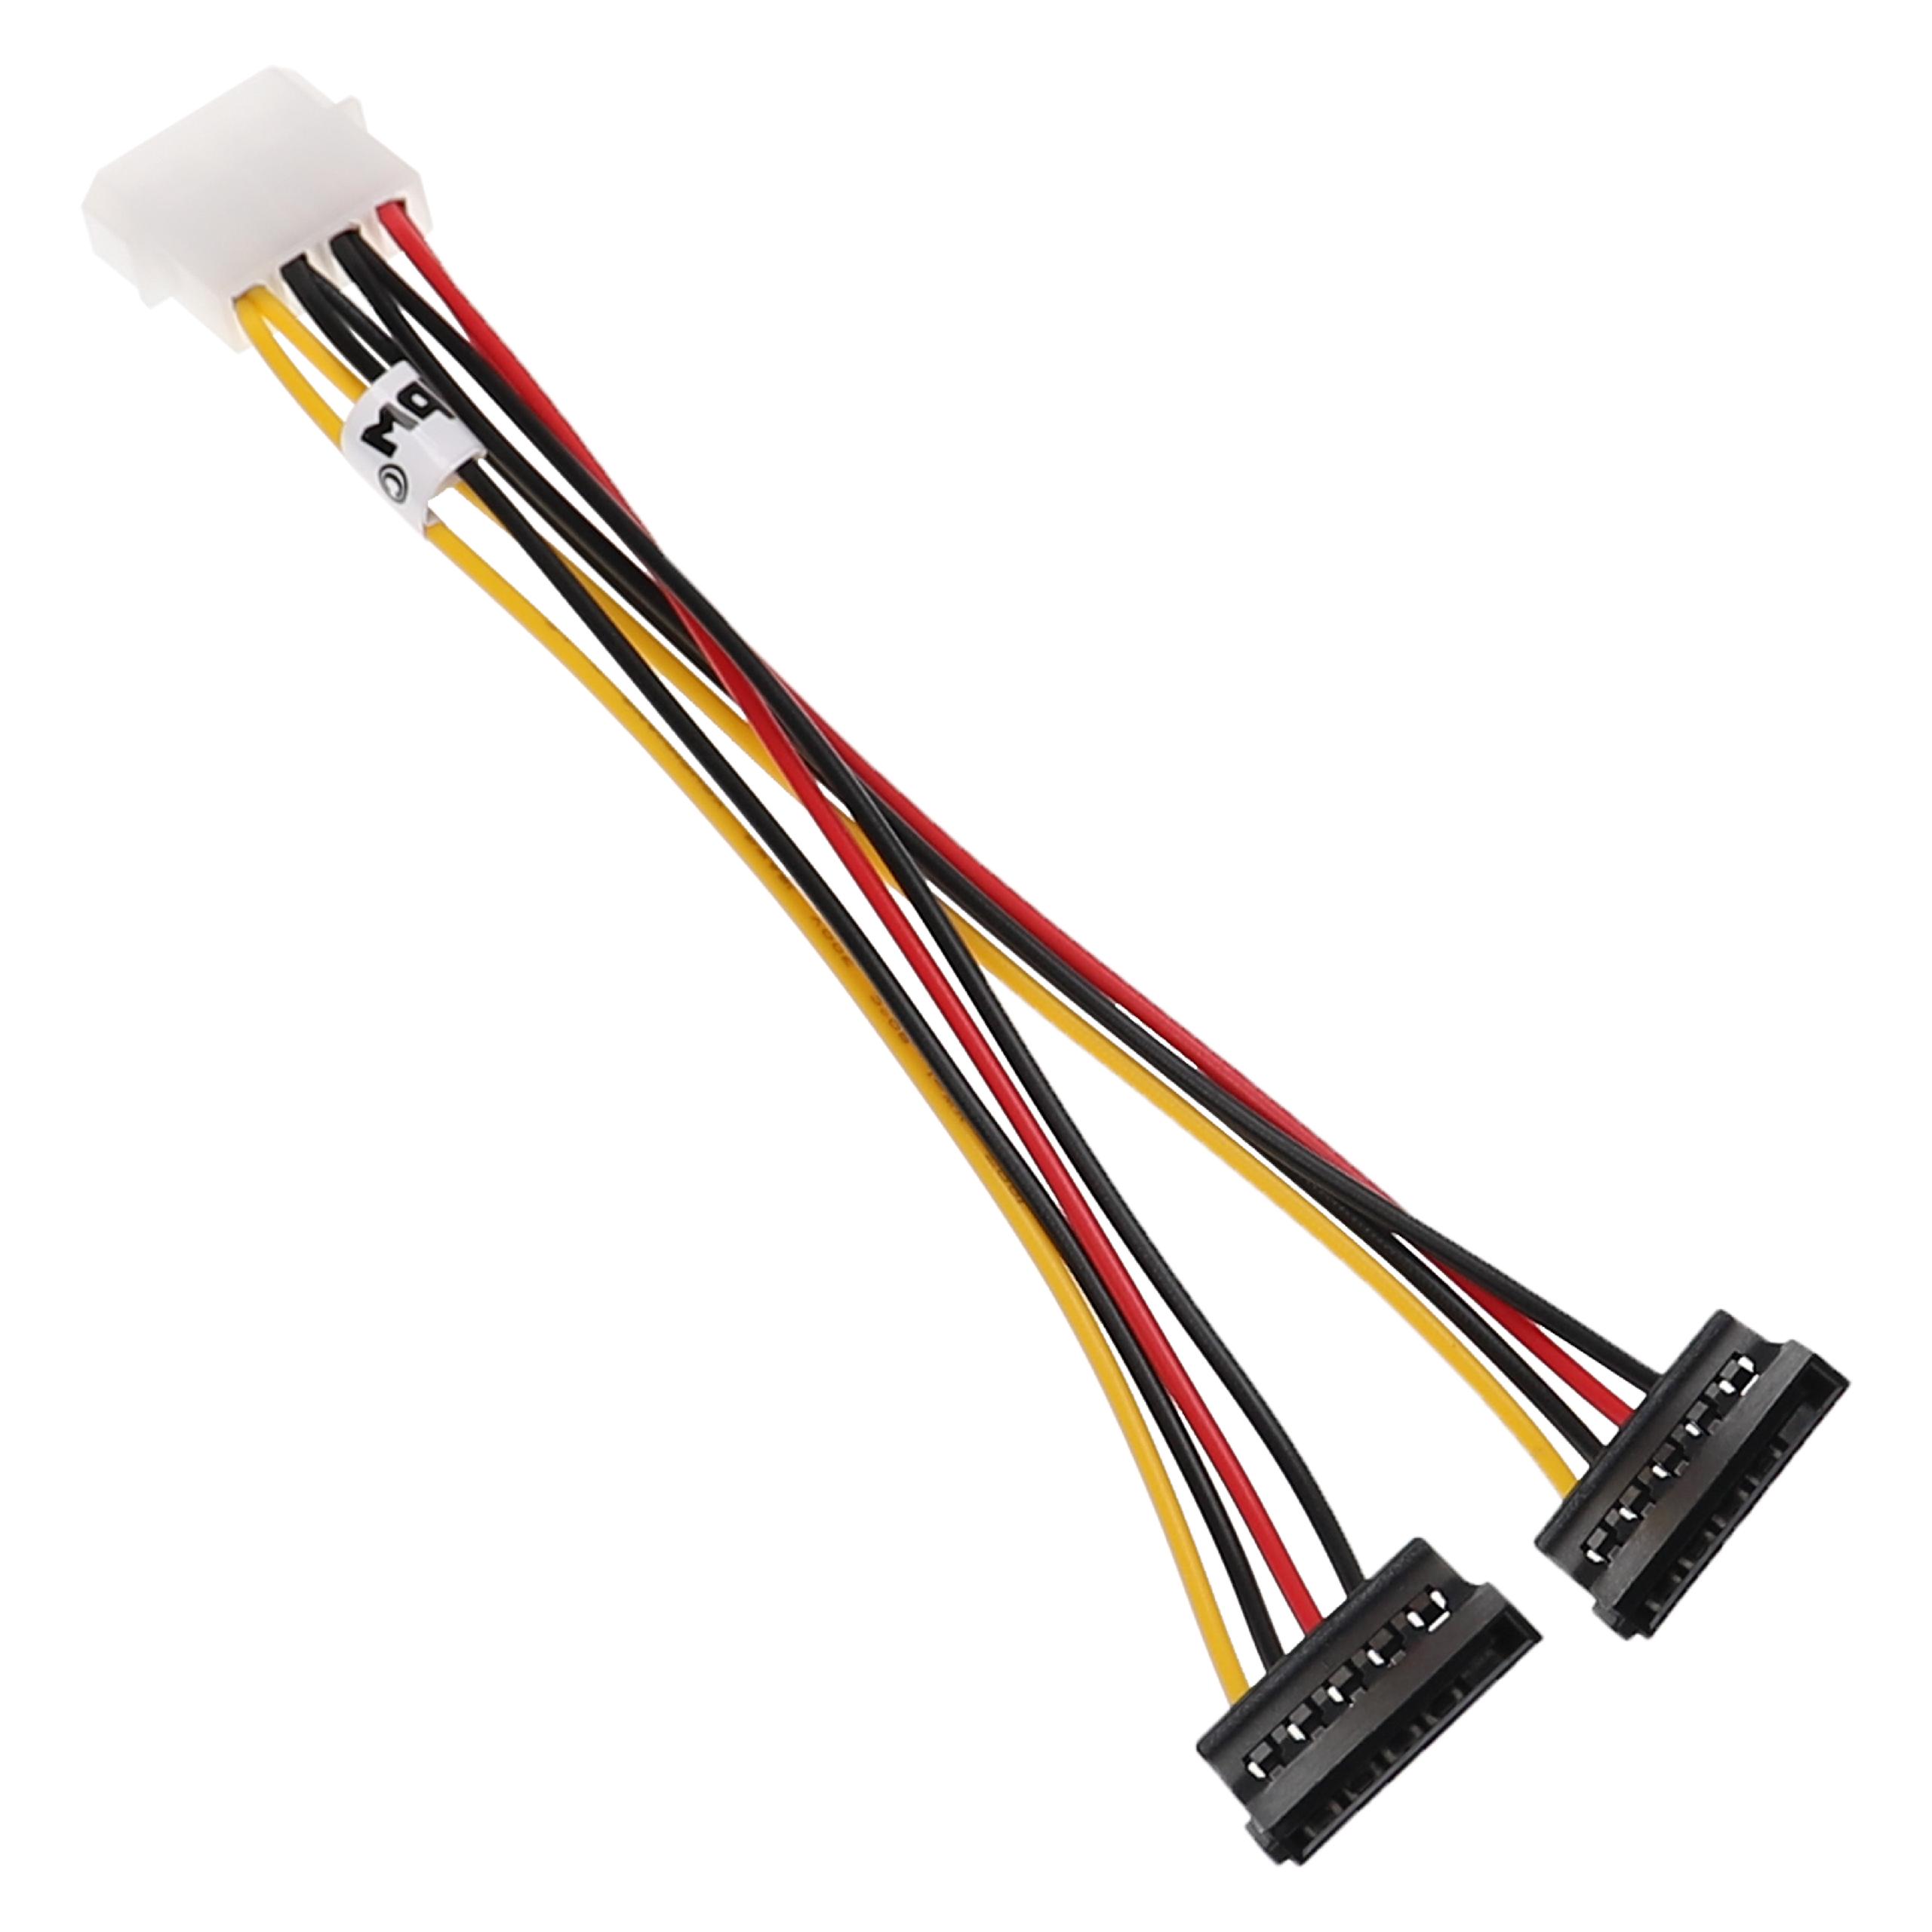 Cable de corriente a 2x SATA (h) compatible para discos duros - Cable de corriente Y, 12 cm